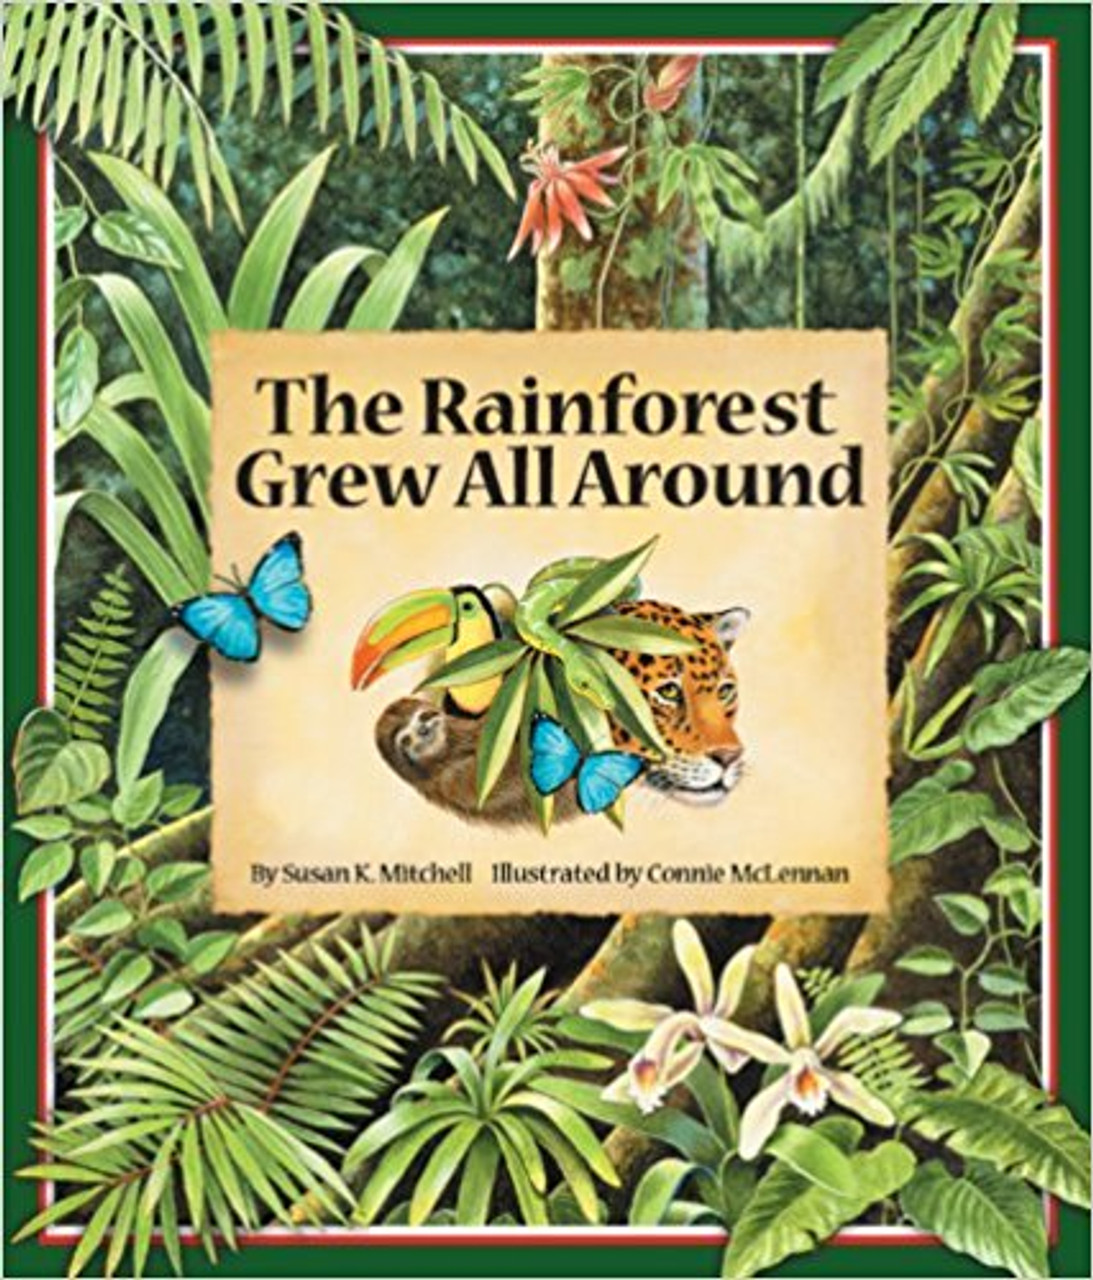 Rainforest Grew All Around, The by Susan K. Mitchell